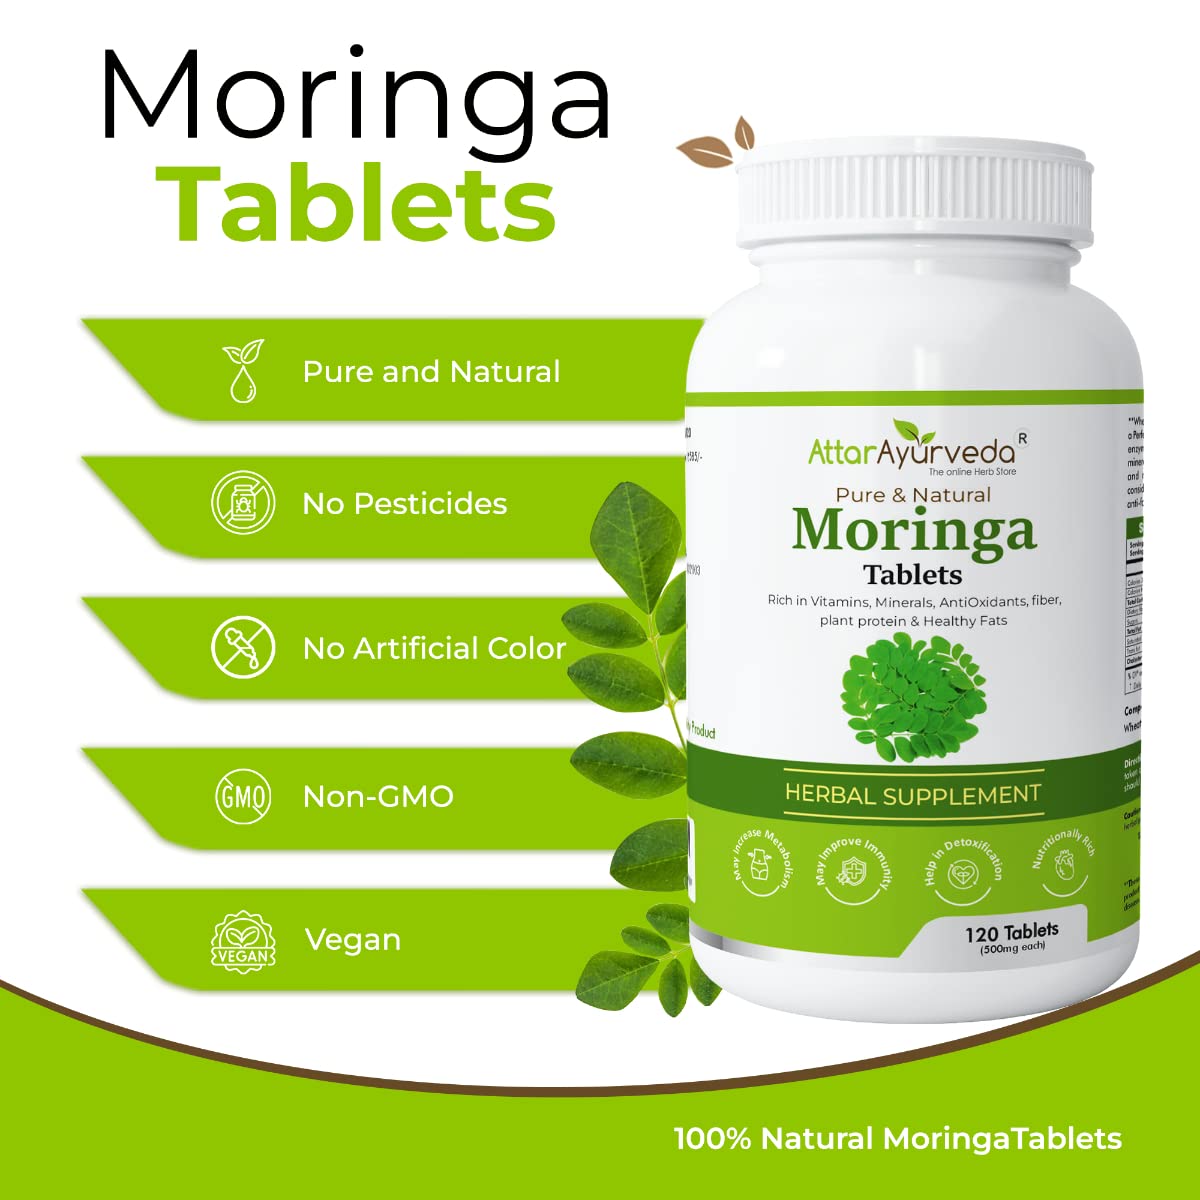 Attar Ayurveda Moringa leaves tablets